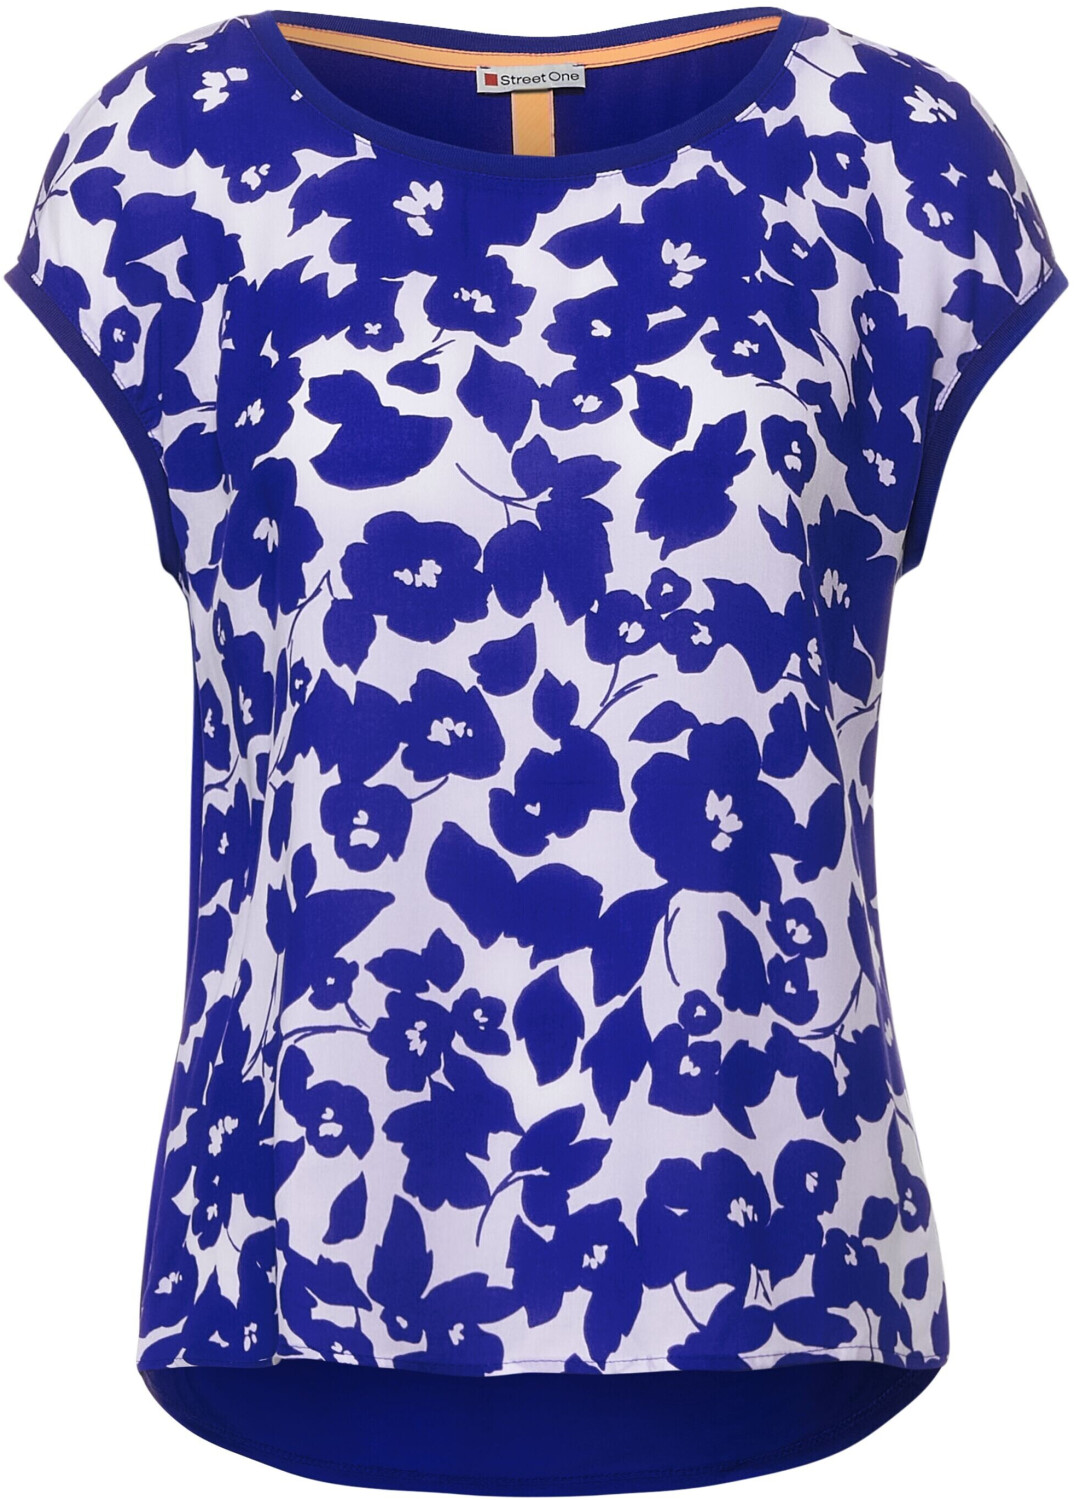 Street One T-shirt Mit Blumen Print (A317851) intense blue ab 11,26 € |  Preisvergleich bei